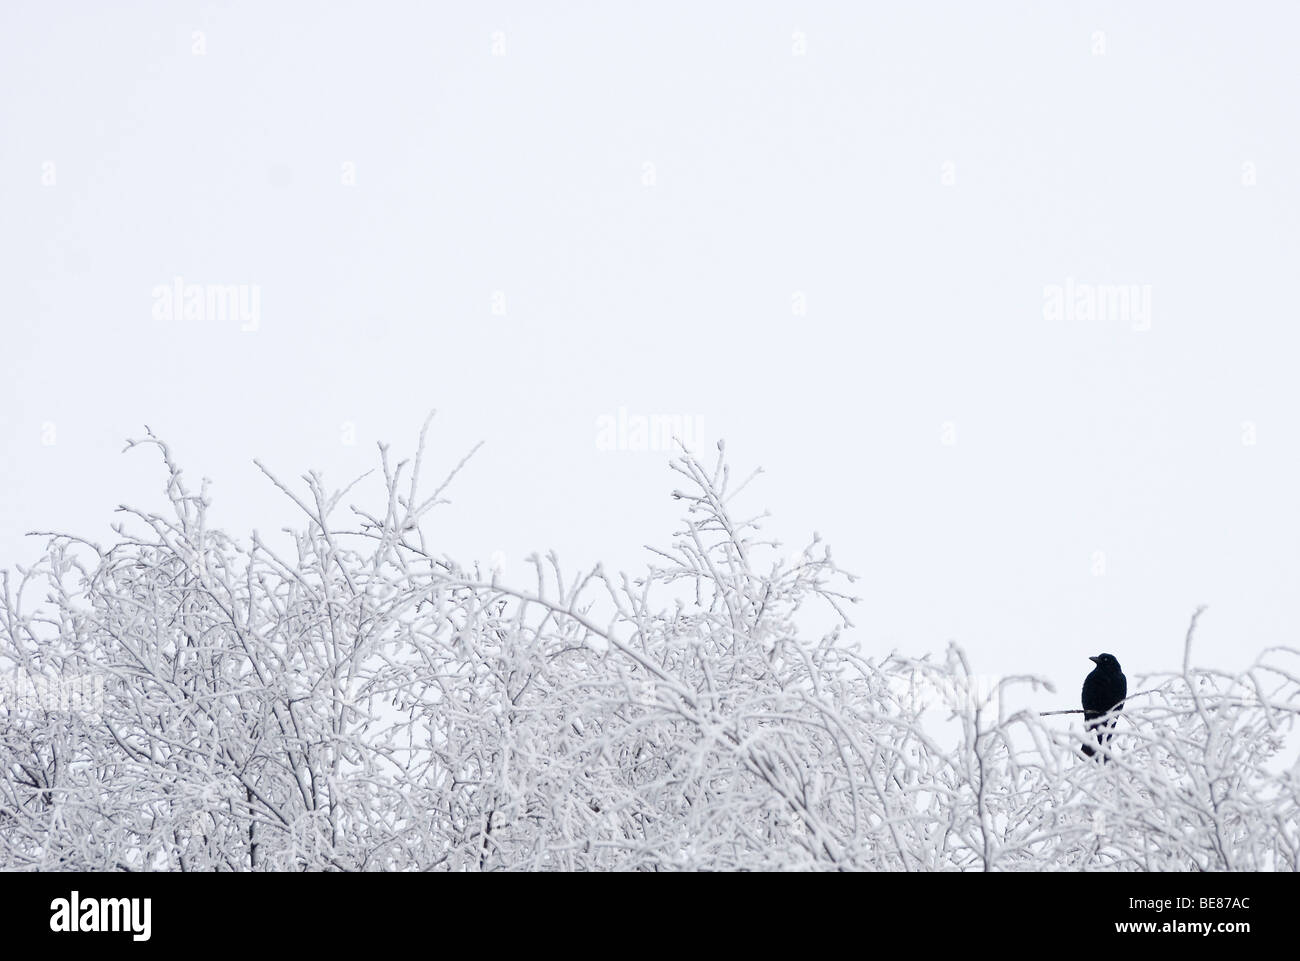 Merel op berijpte takken dans sneeuwbui tijdens de winter ; Blackbird sur les branches givrées à l'hiver lors d'une tempête de neige Banque D'Images